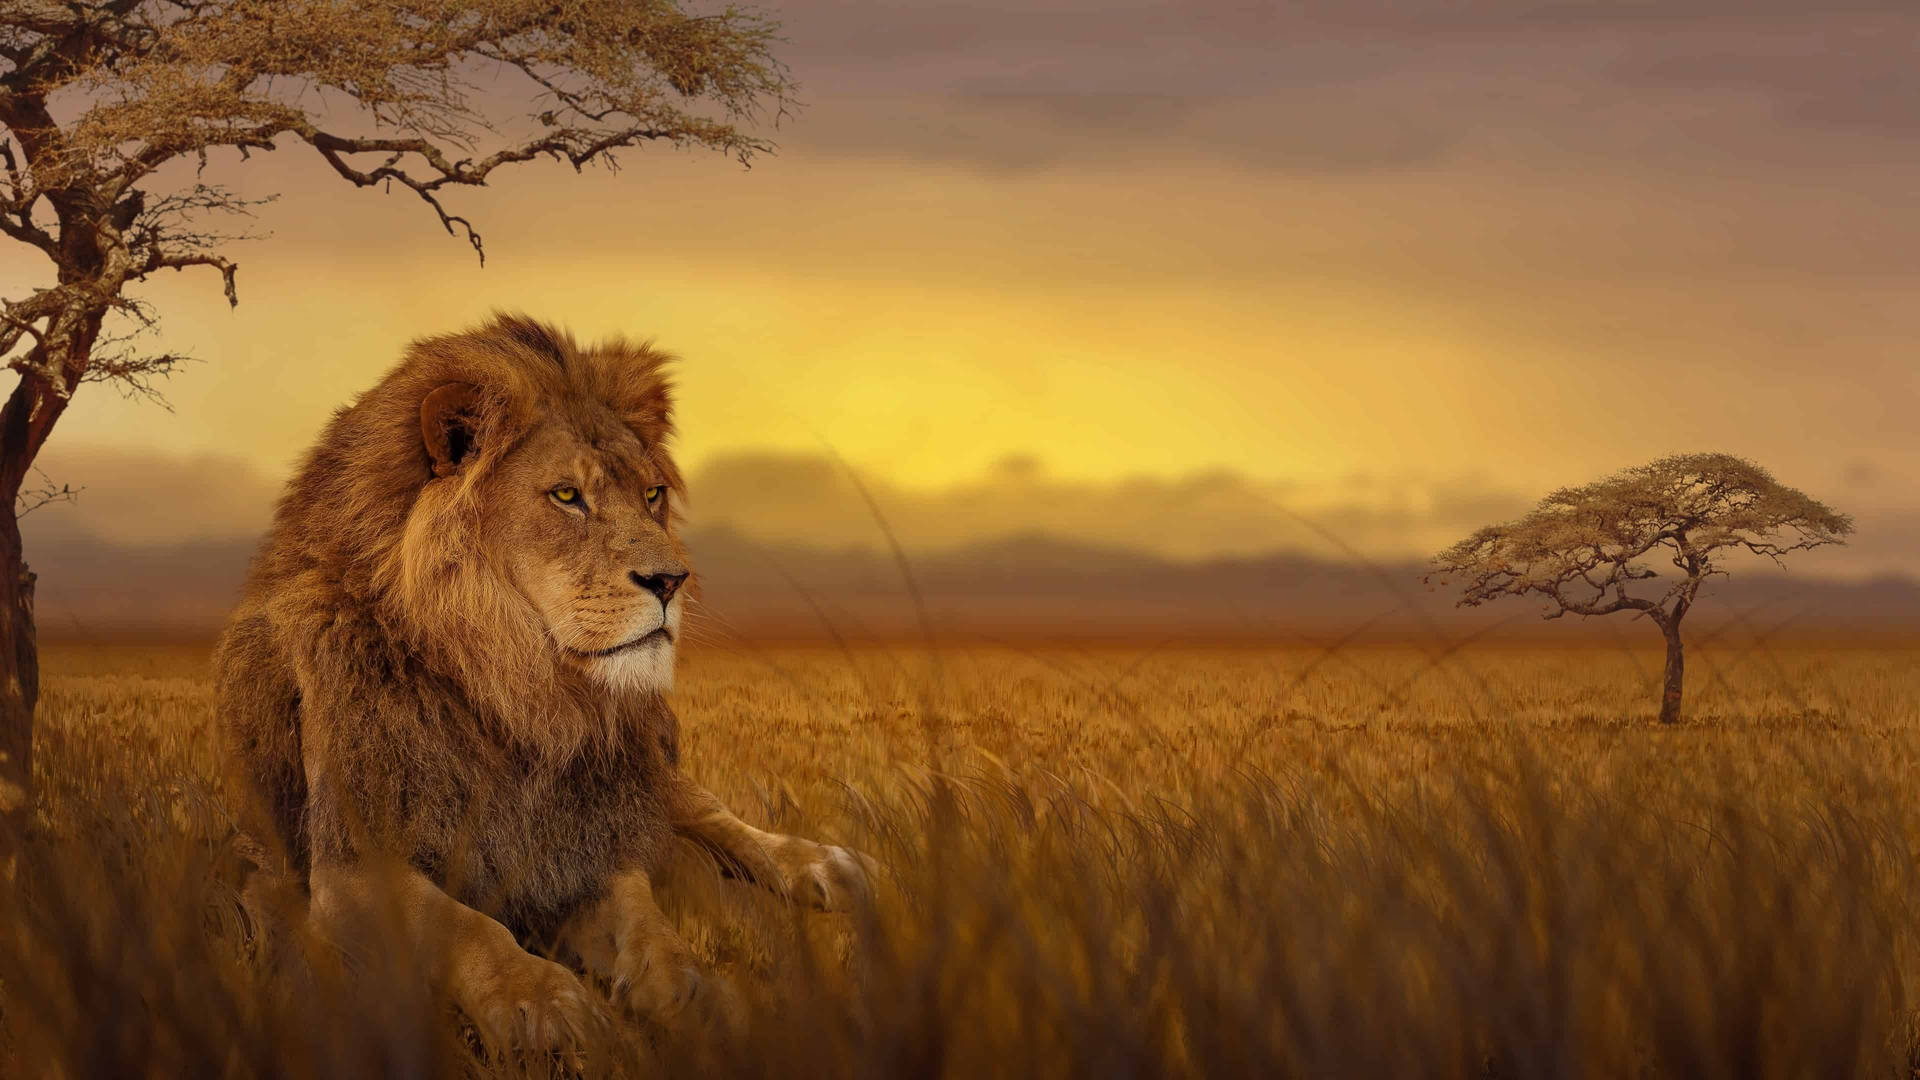 Lion In Grass Field Africa Wallpaper